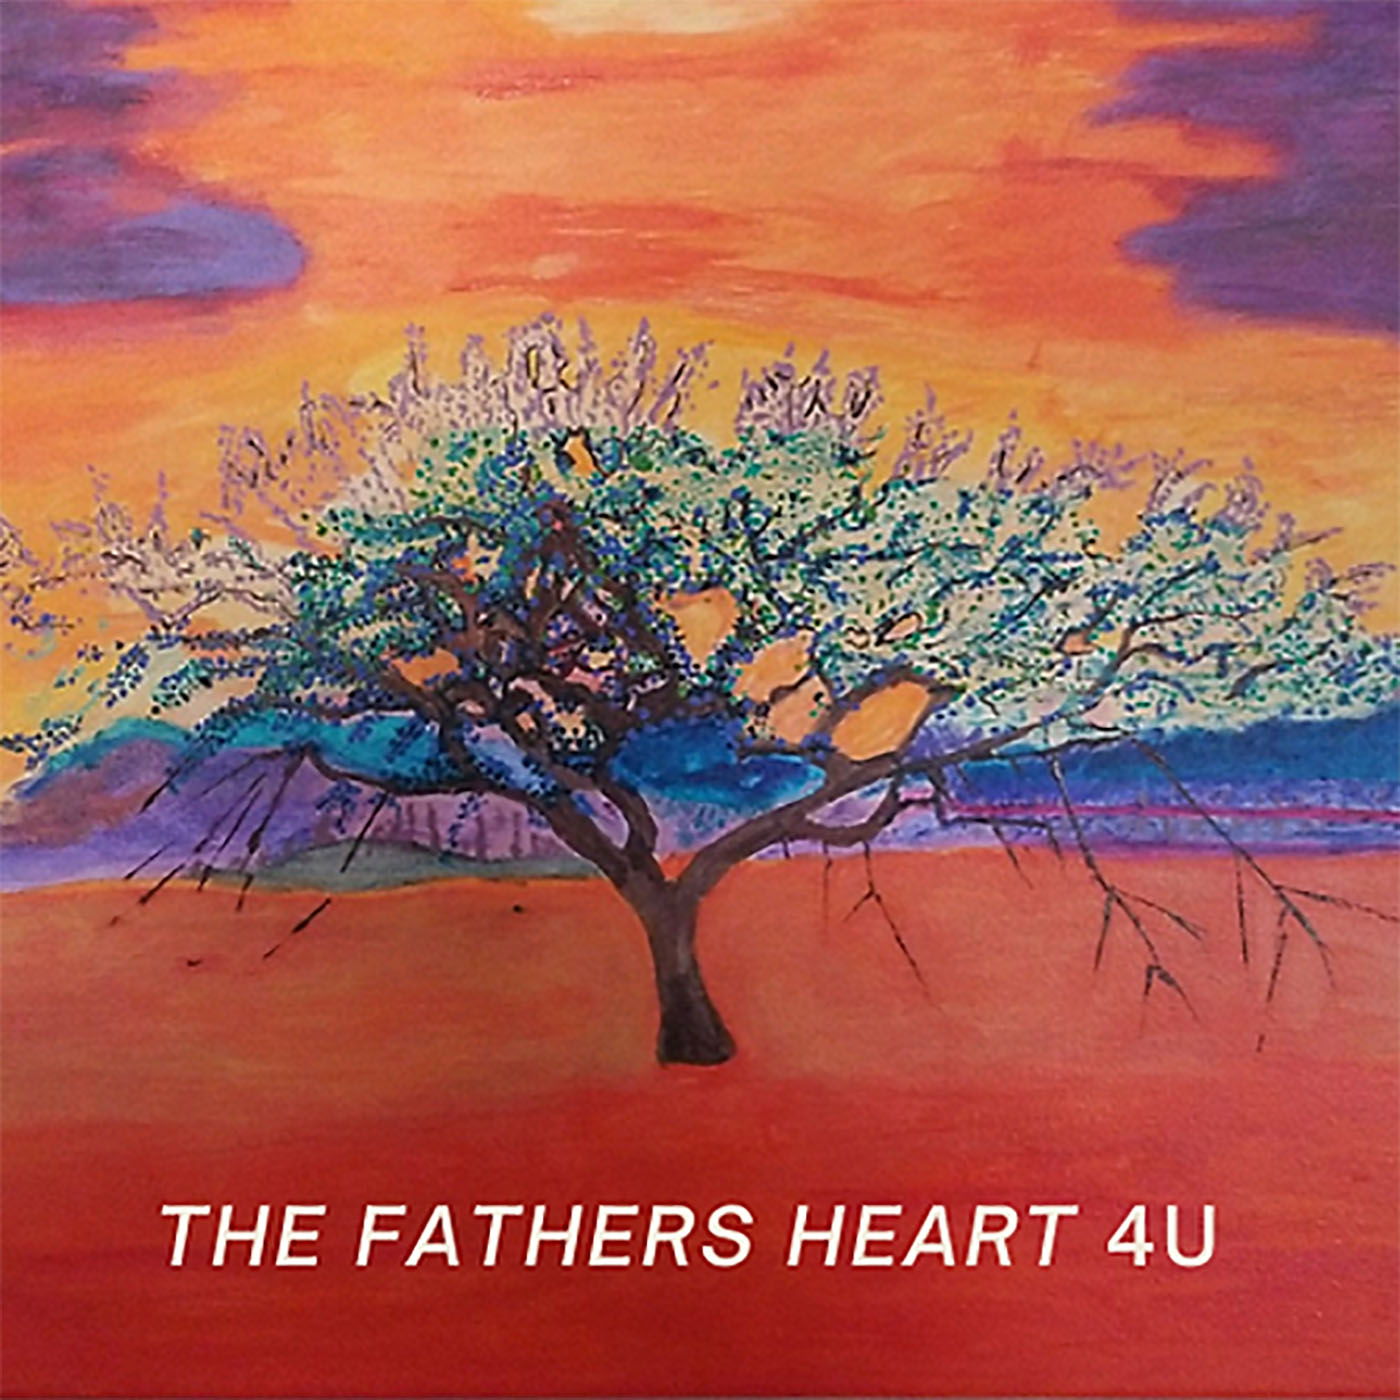 The Fathers Heart 4U